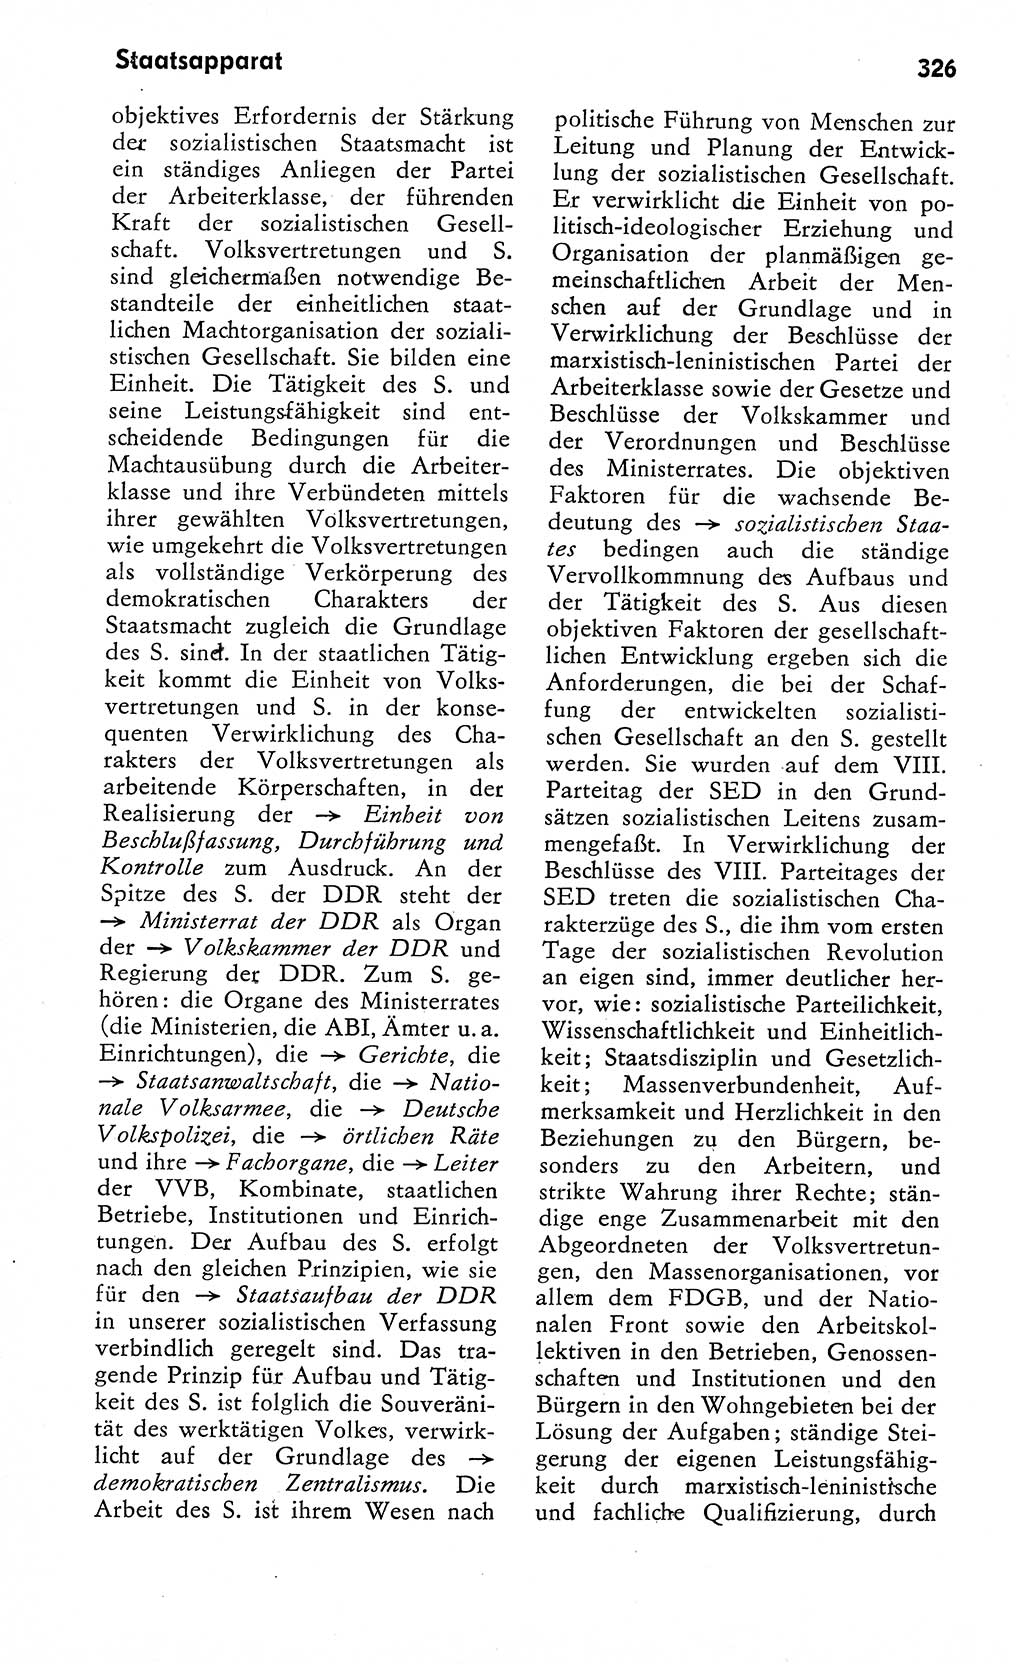 Wörterbuch zum sozialistischen Staat [Deutsche Demokratische Republik (DDR)] 1974, Seite 326 (Wb. soz. St. DDR 1974, S. 326)